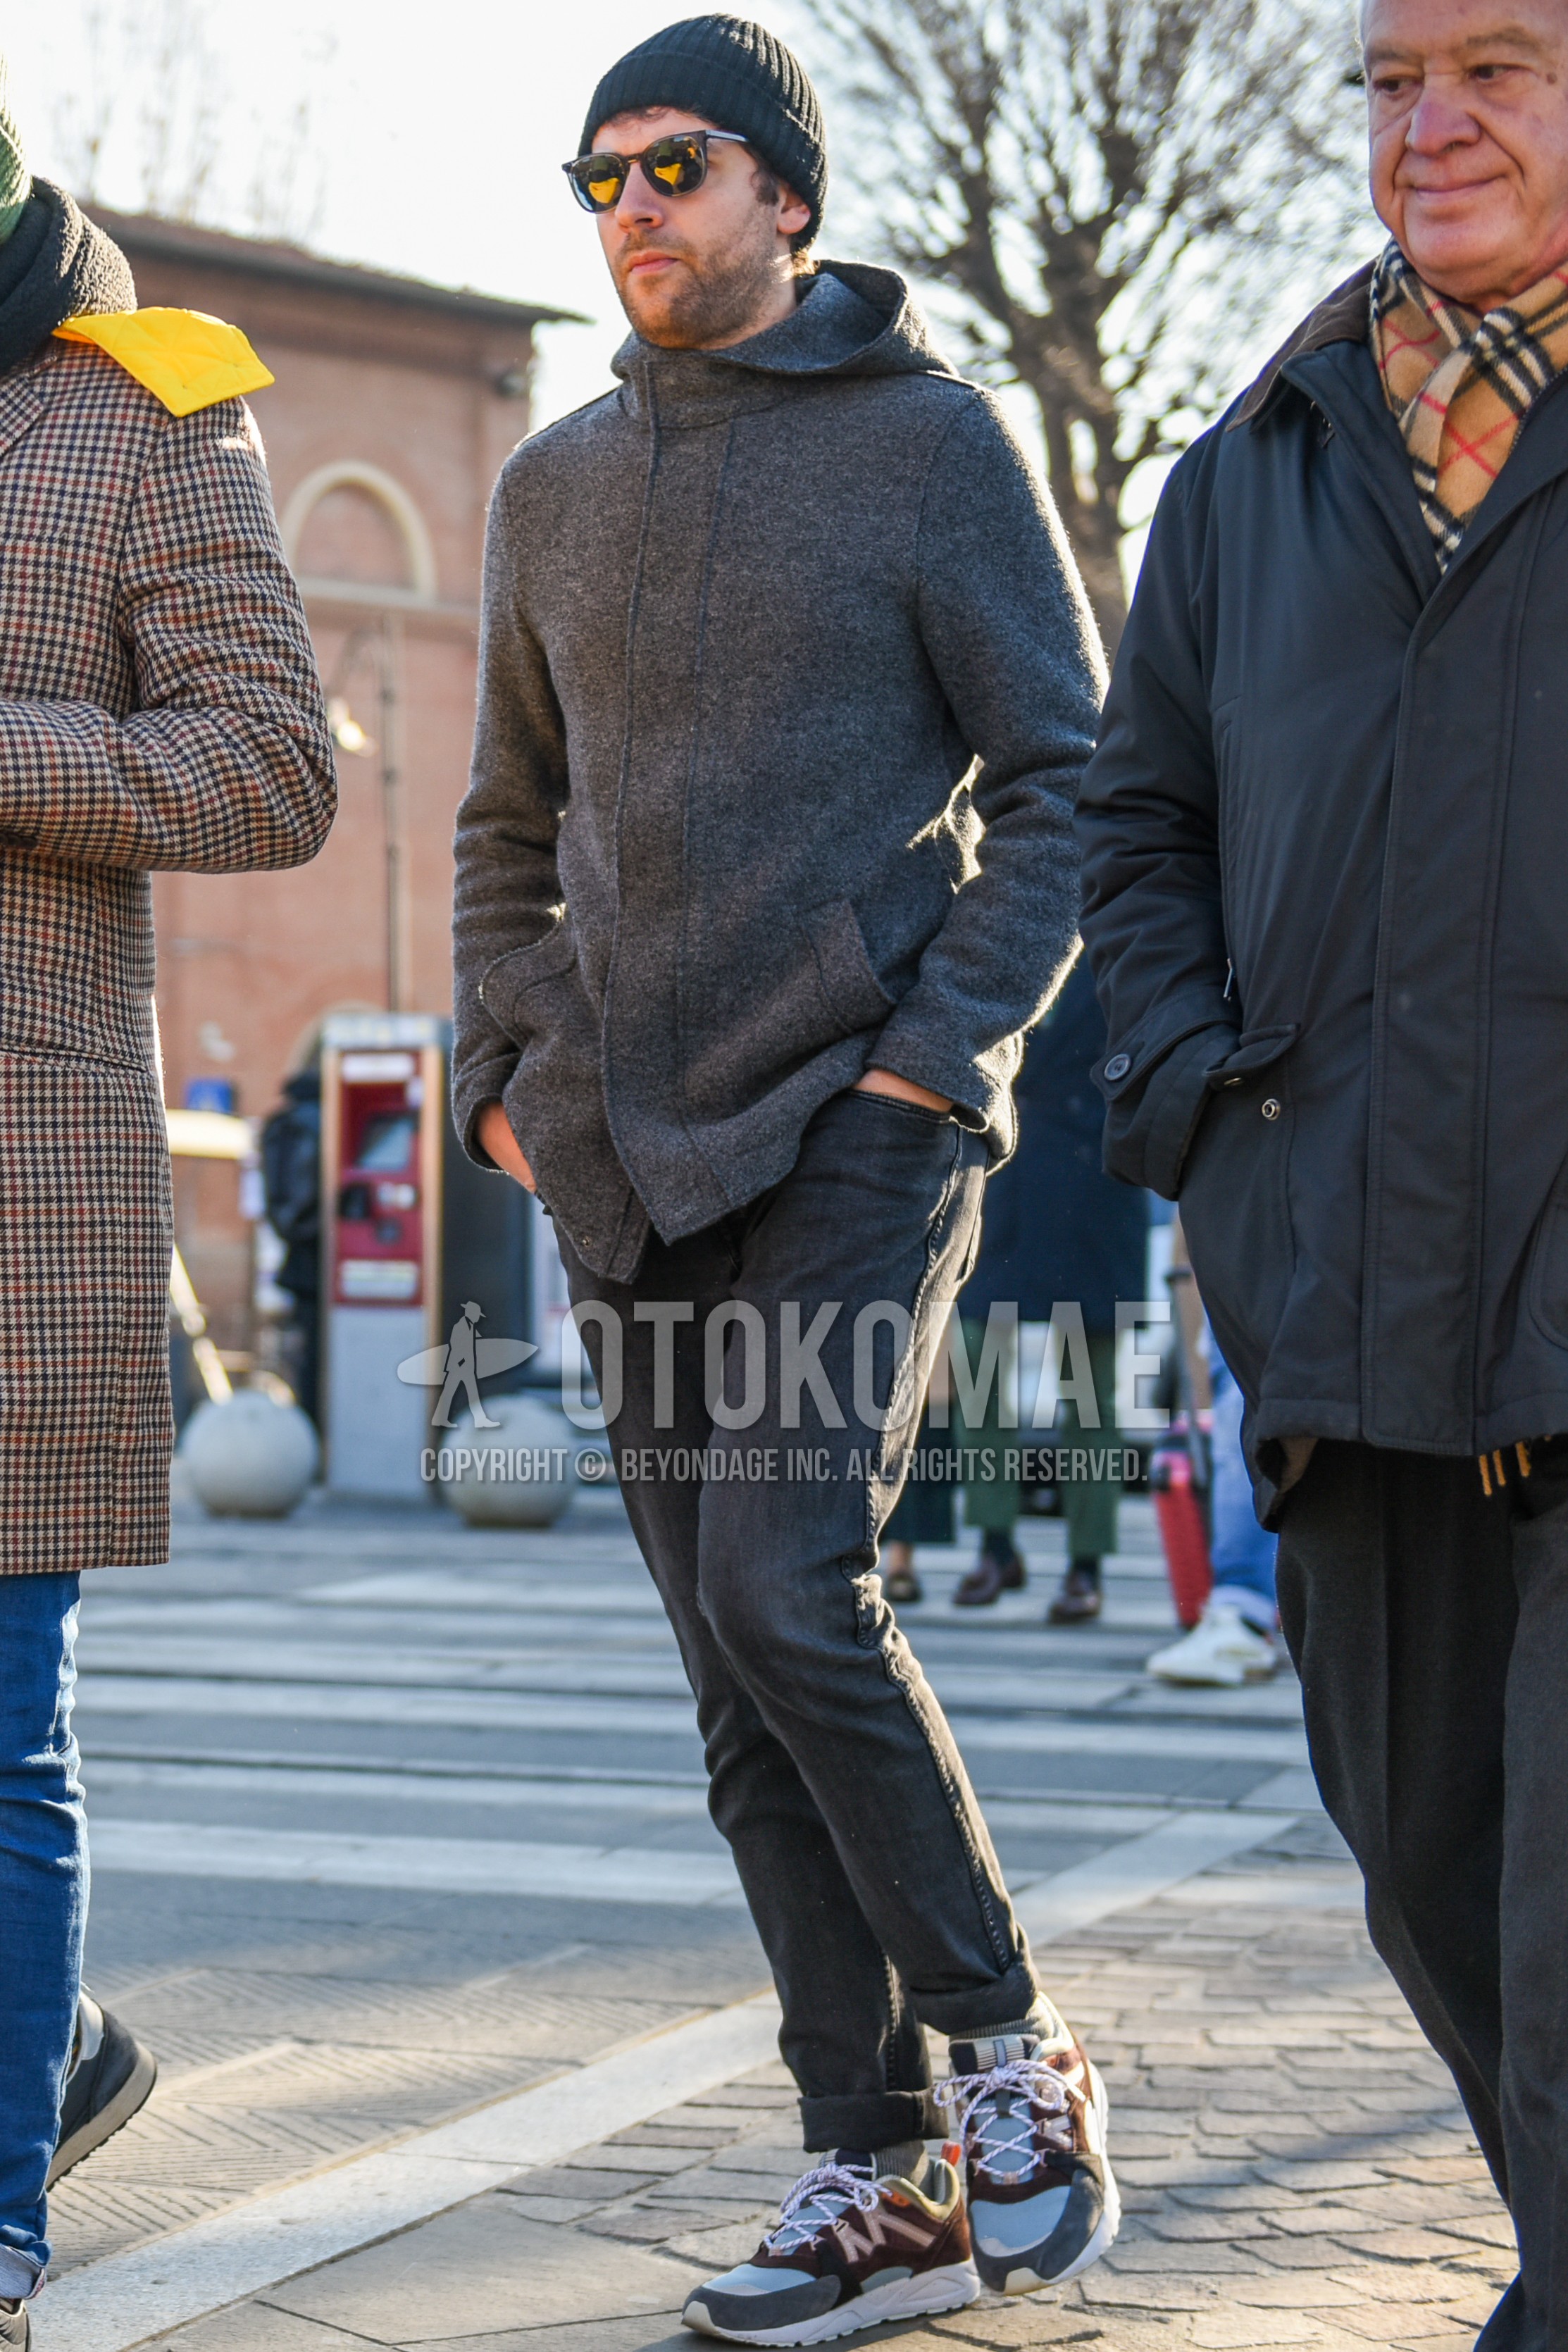 Men's autumn winter outfit with black plain knit cap, black plain sunglasses, gray plain hooded coat, gray plain denim/jeans, gray plain socks, gray low-cut sneakers.